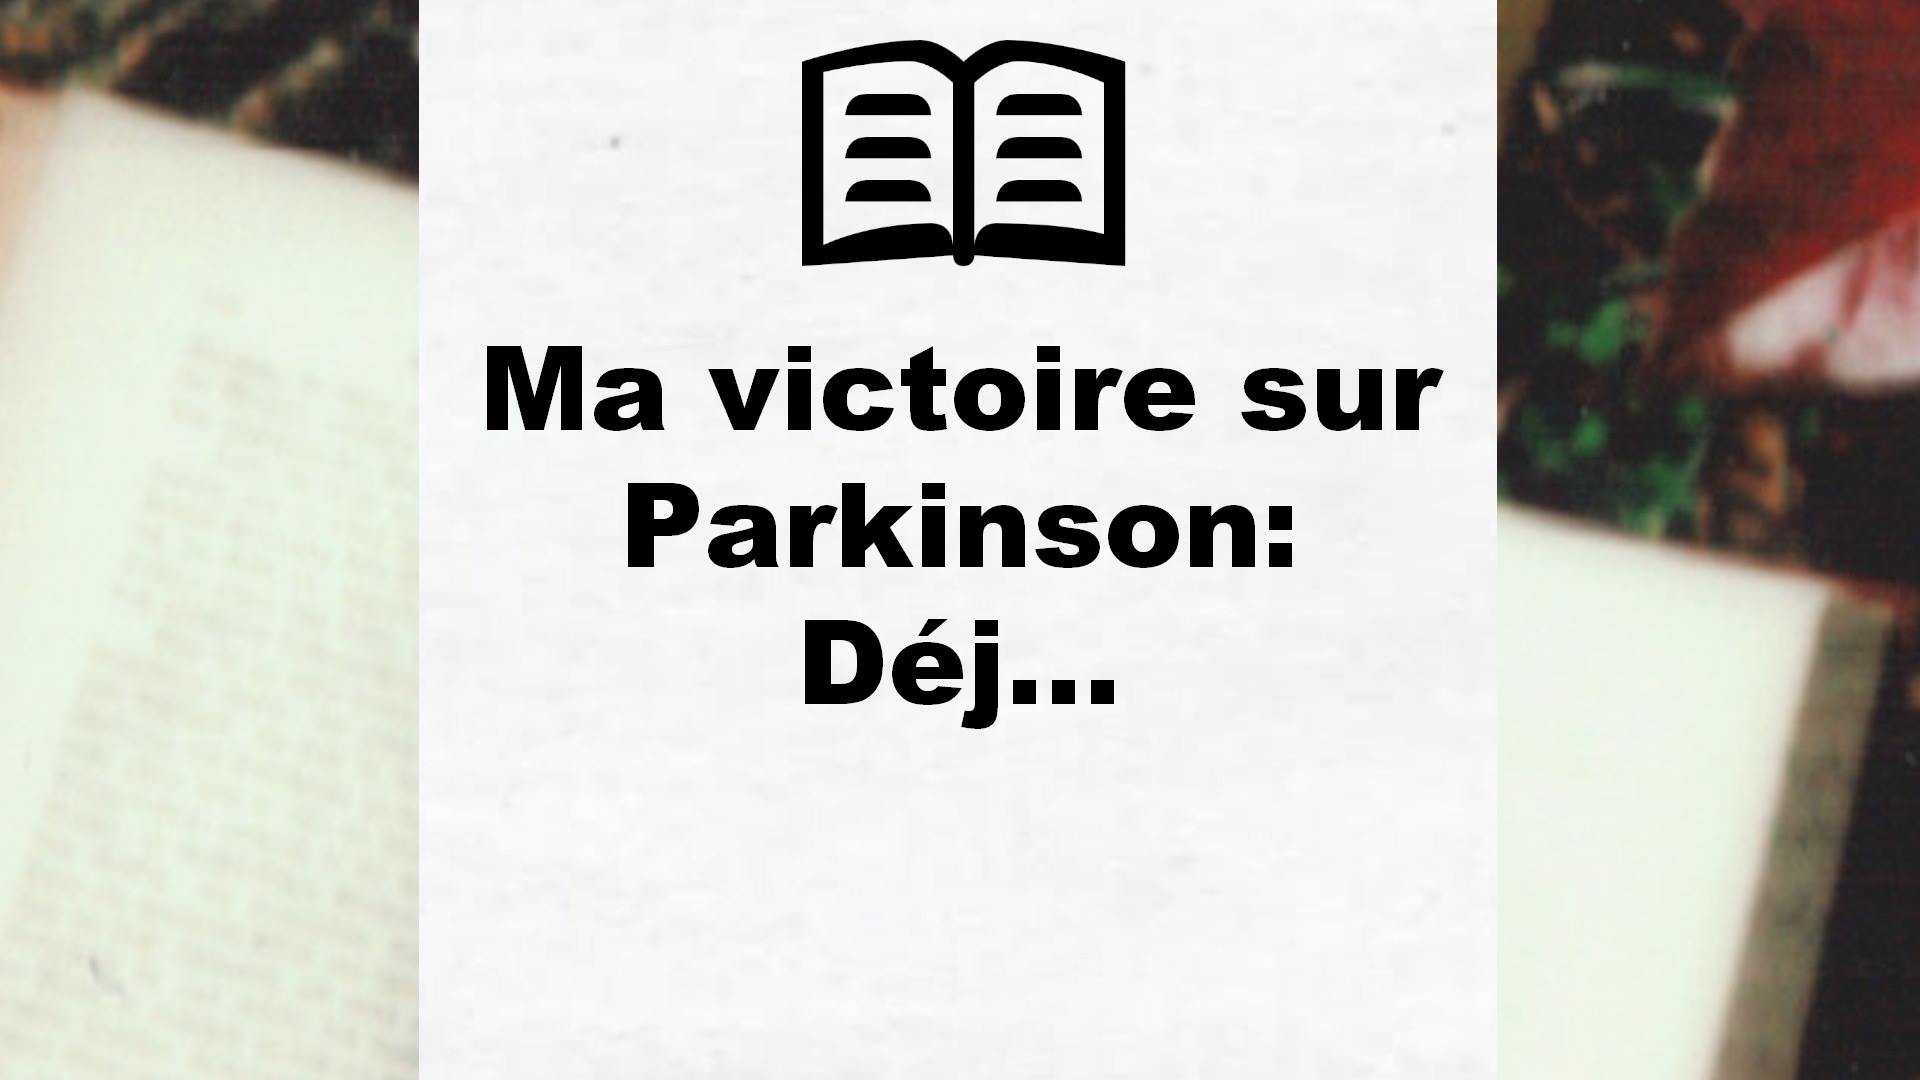 Ma victoire sur Parkinson: Déj… – Critique